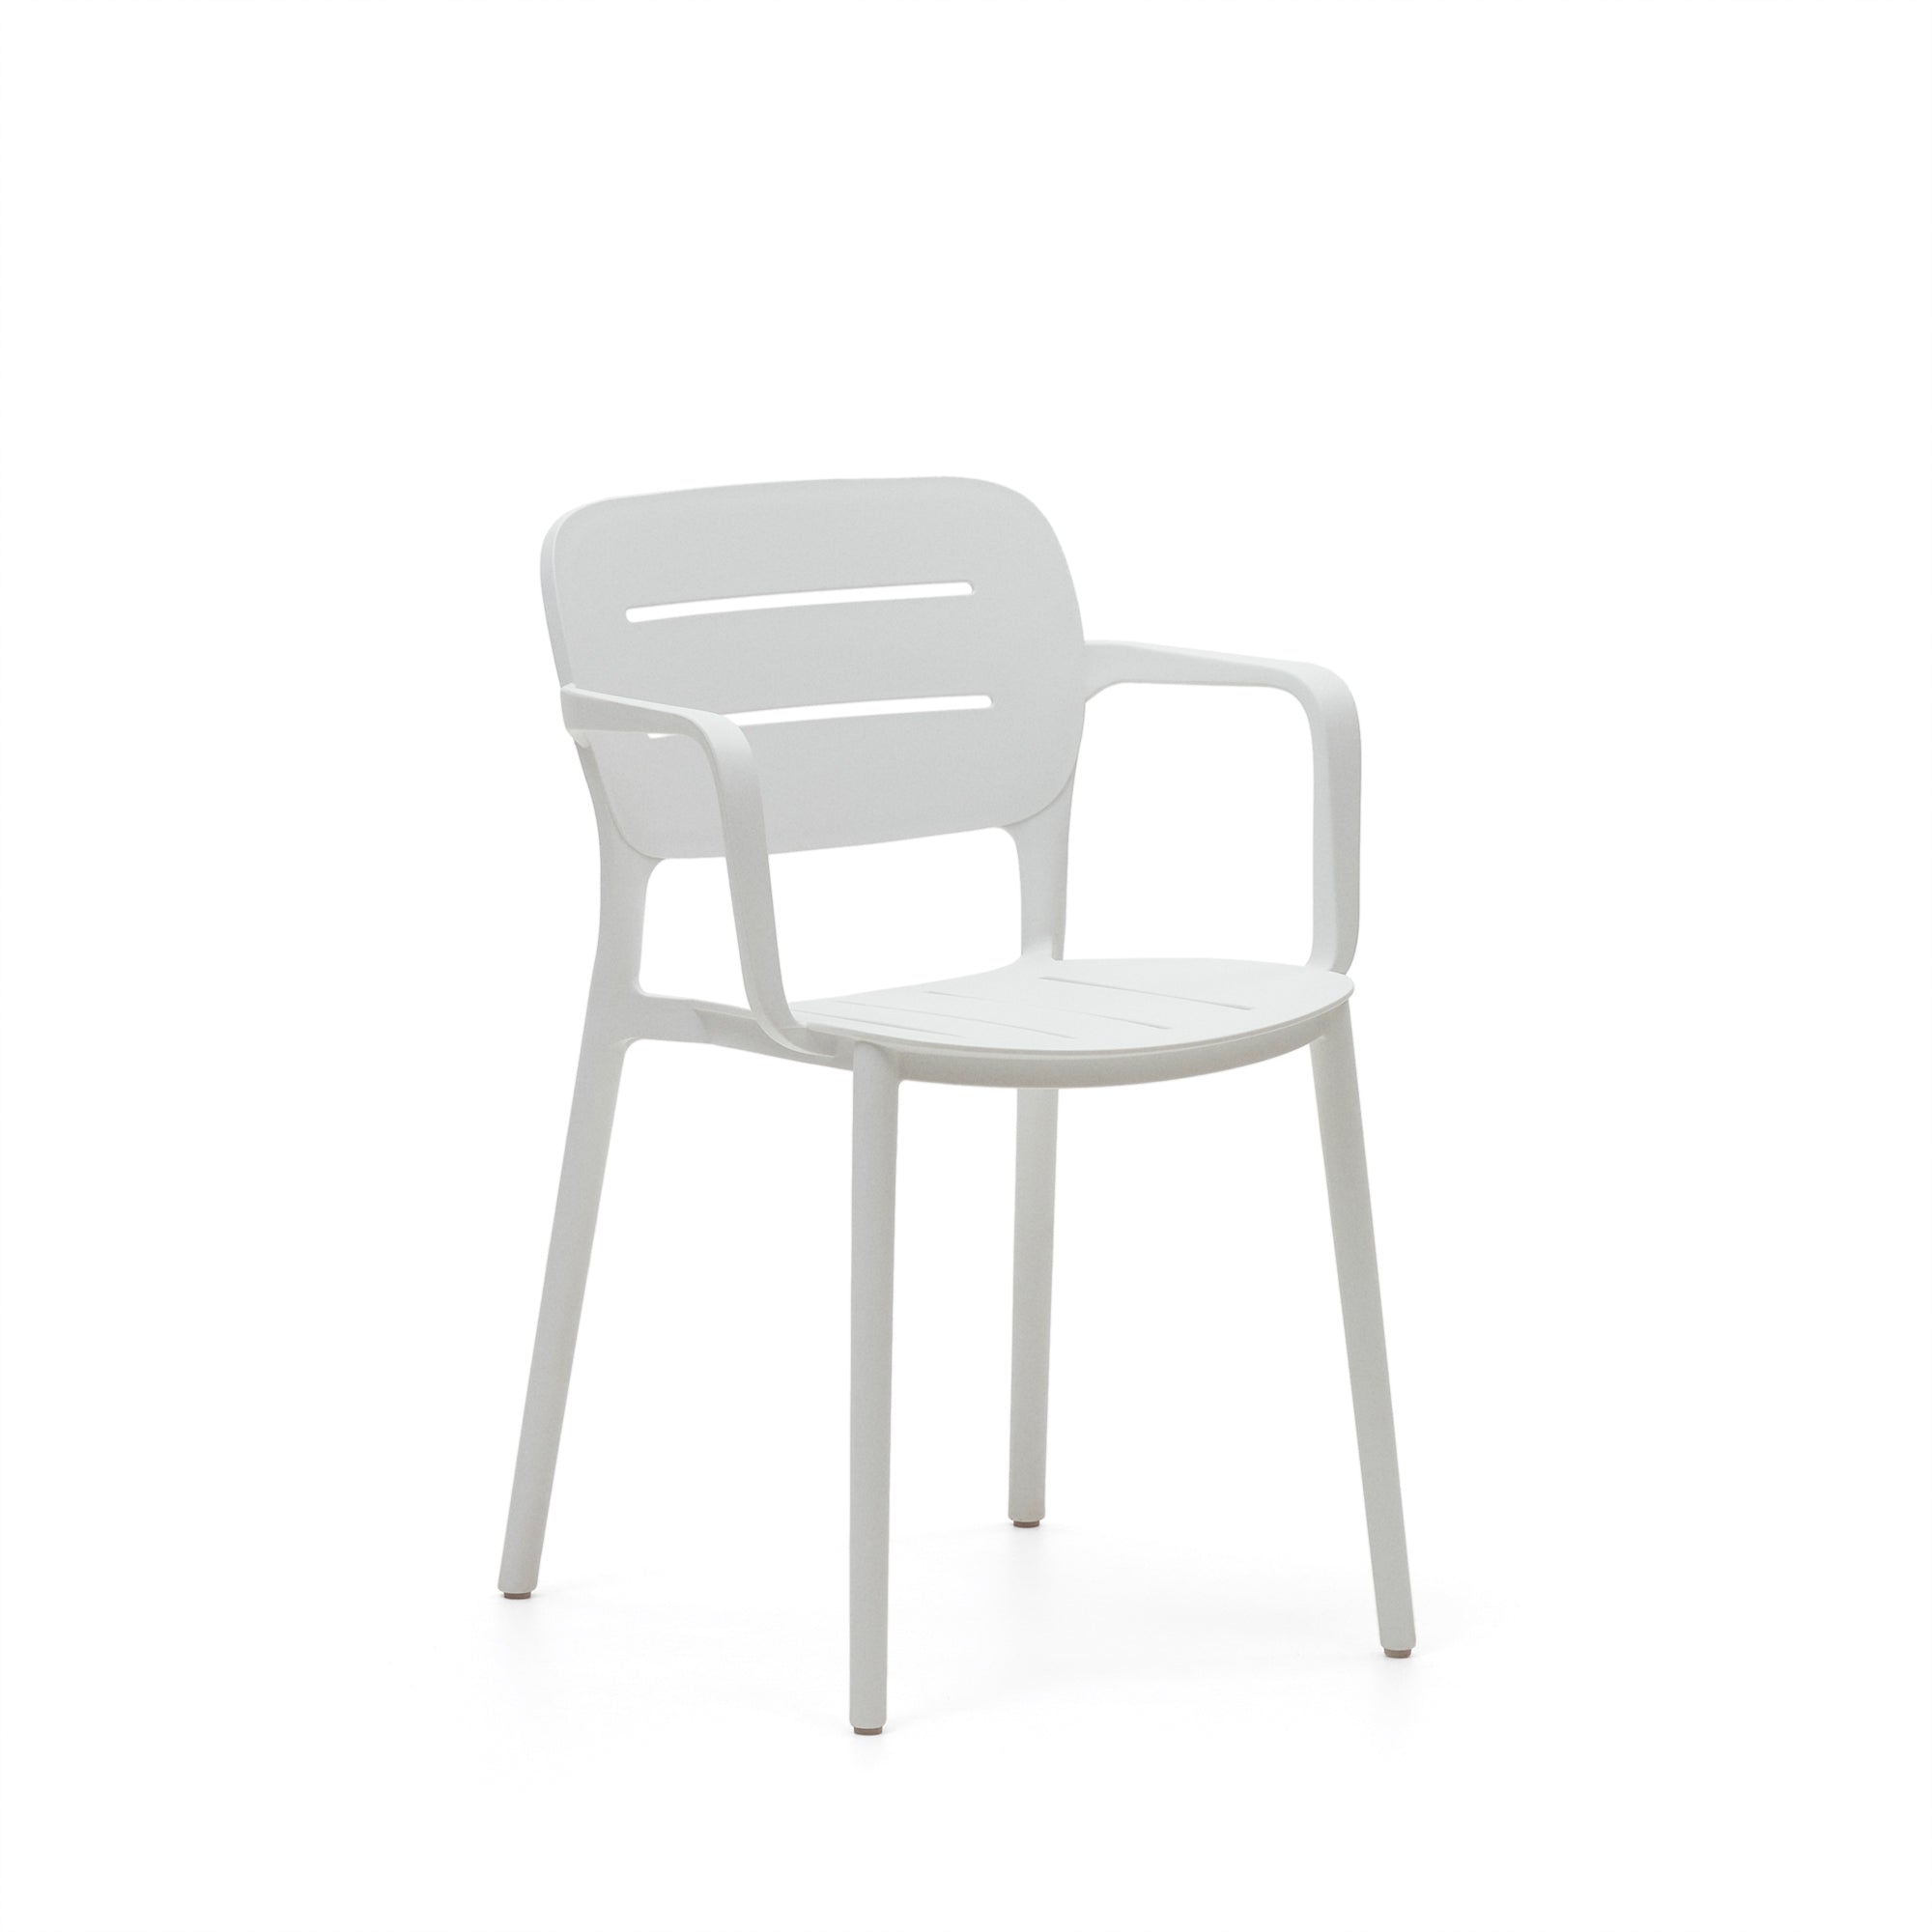 Morella egymásba rakható kültéri szék fehér színben